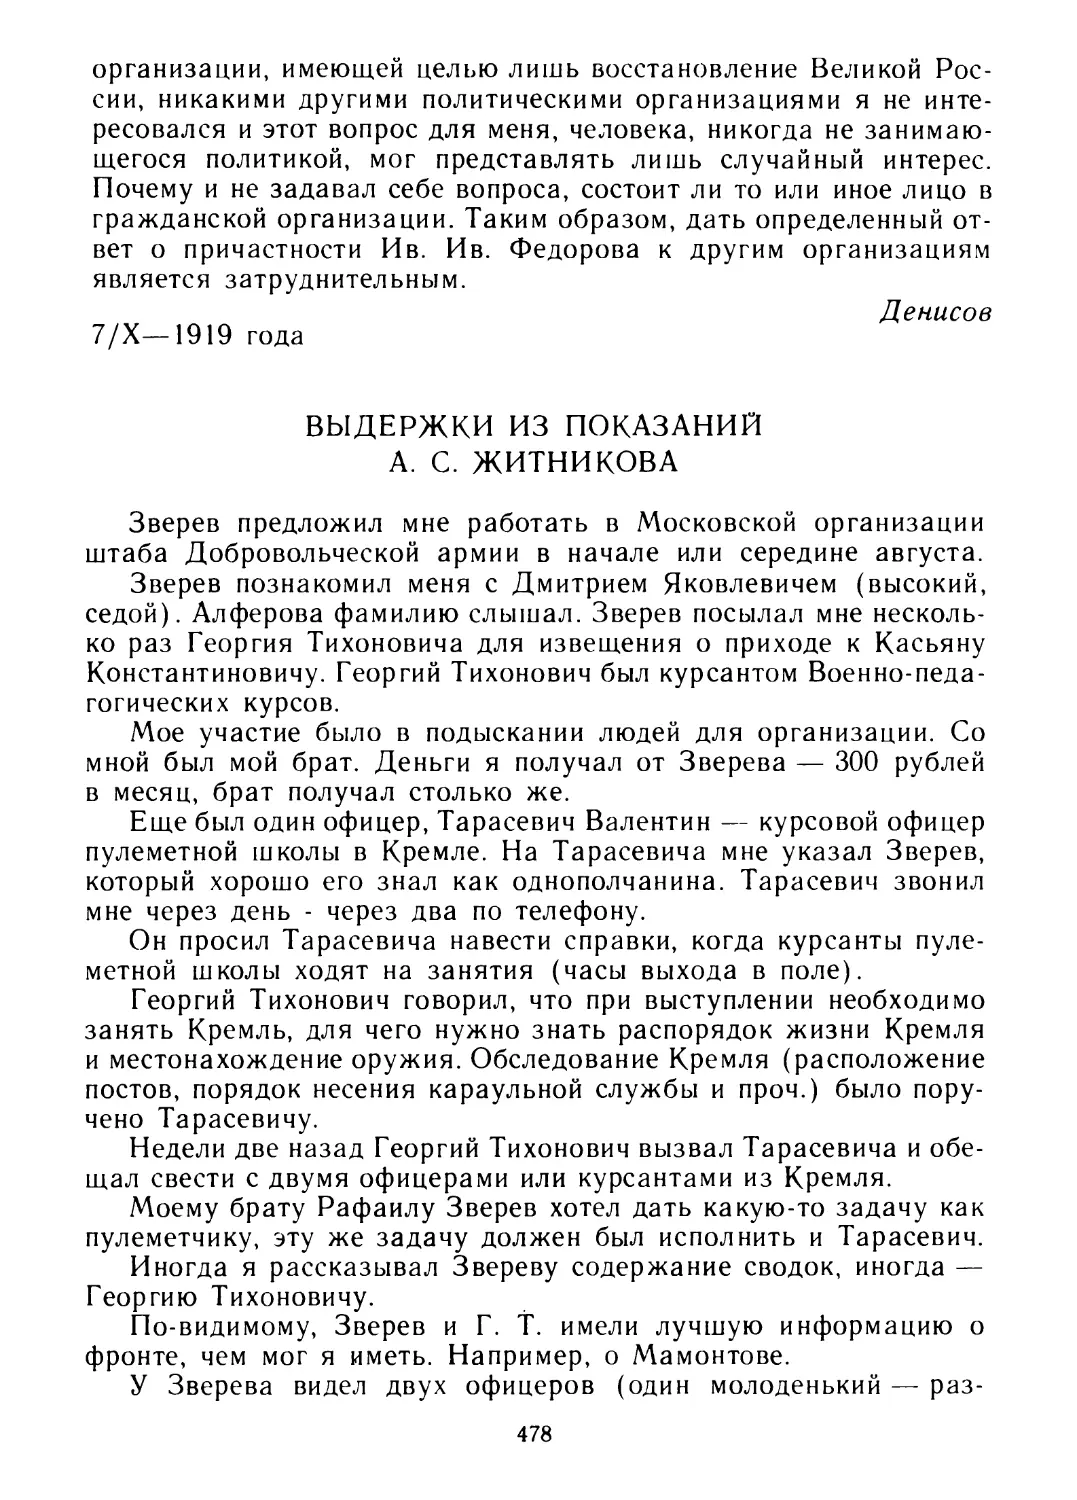 Выдержки из показаний А. С. Житникова